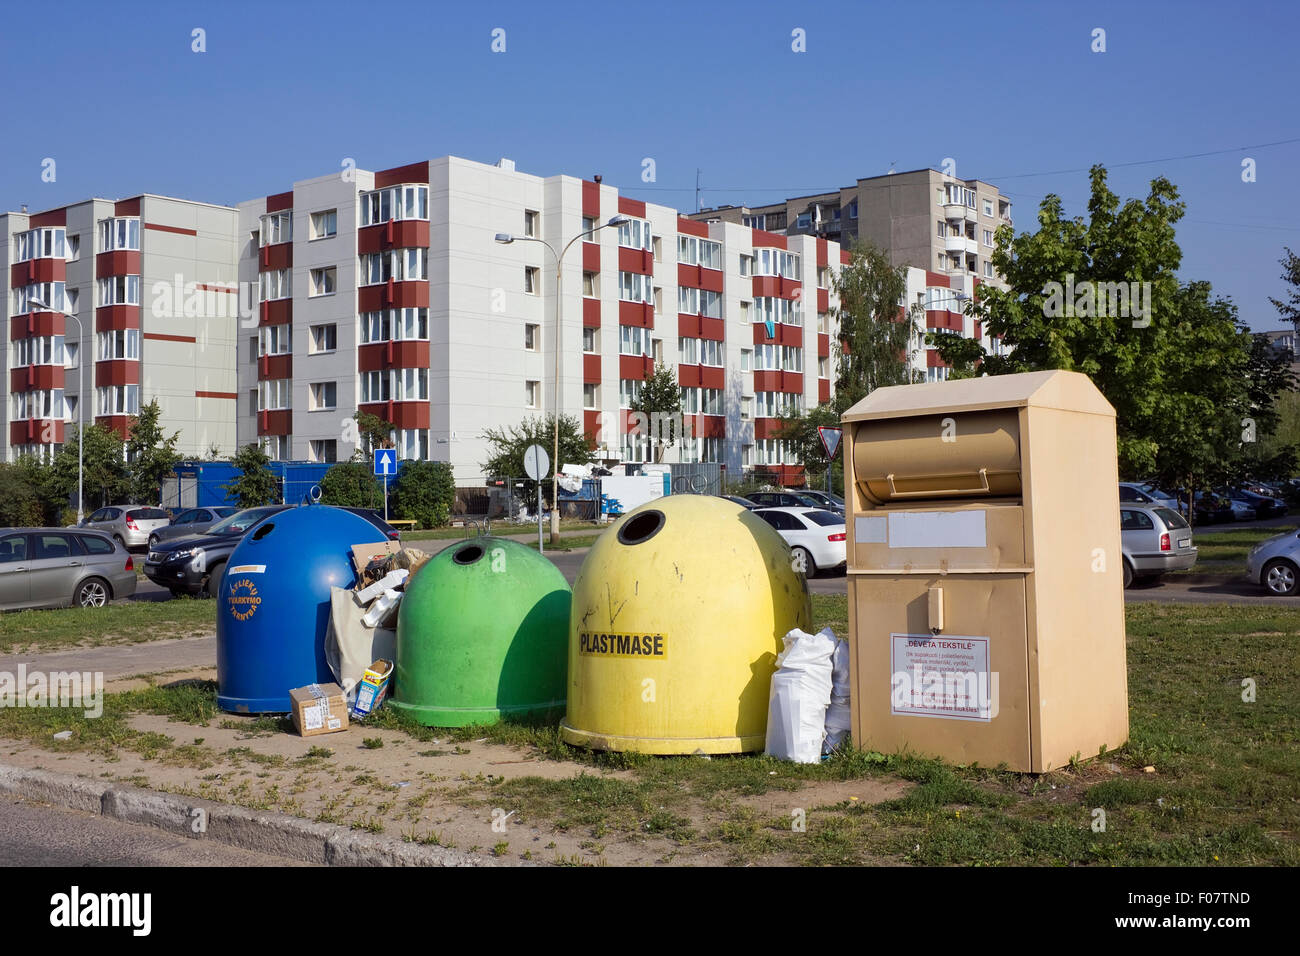 Müllcontainer in der schlafenden Stadt. Heißer Sommertag. Es gibt keine Logos oder Warenzeichen.  Inschriften auf Litauisch - pla Stockfoto